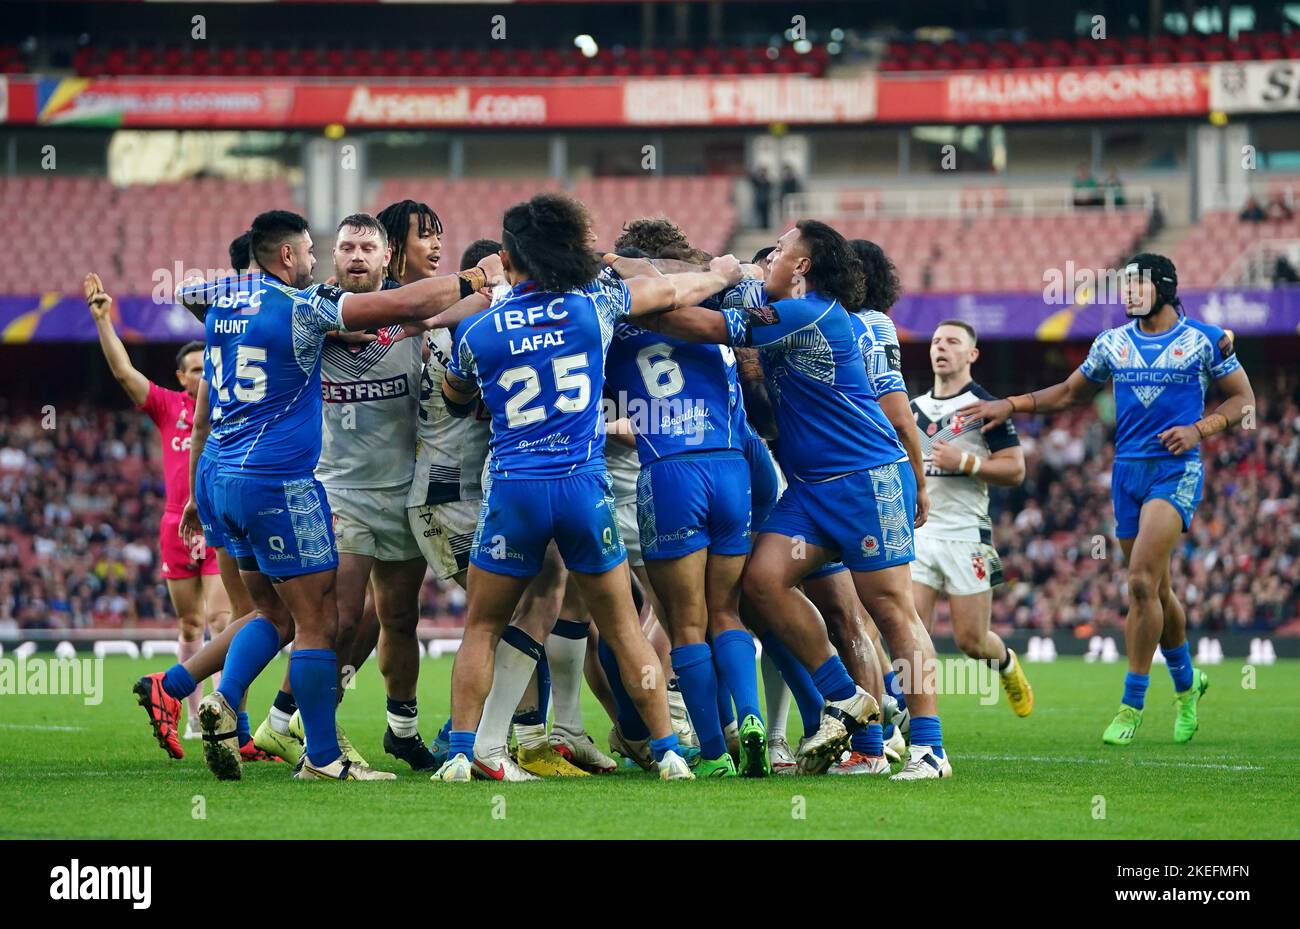 I tempri si fanno beffe durante la semifinale della Coppa del mondo di Rugby all'Emirates Stadium, Londra. Data immagine: Sabato 12 novembre 2022. Foto Stock